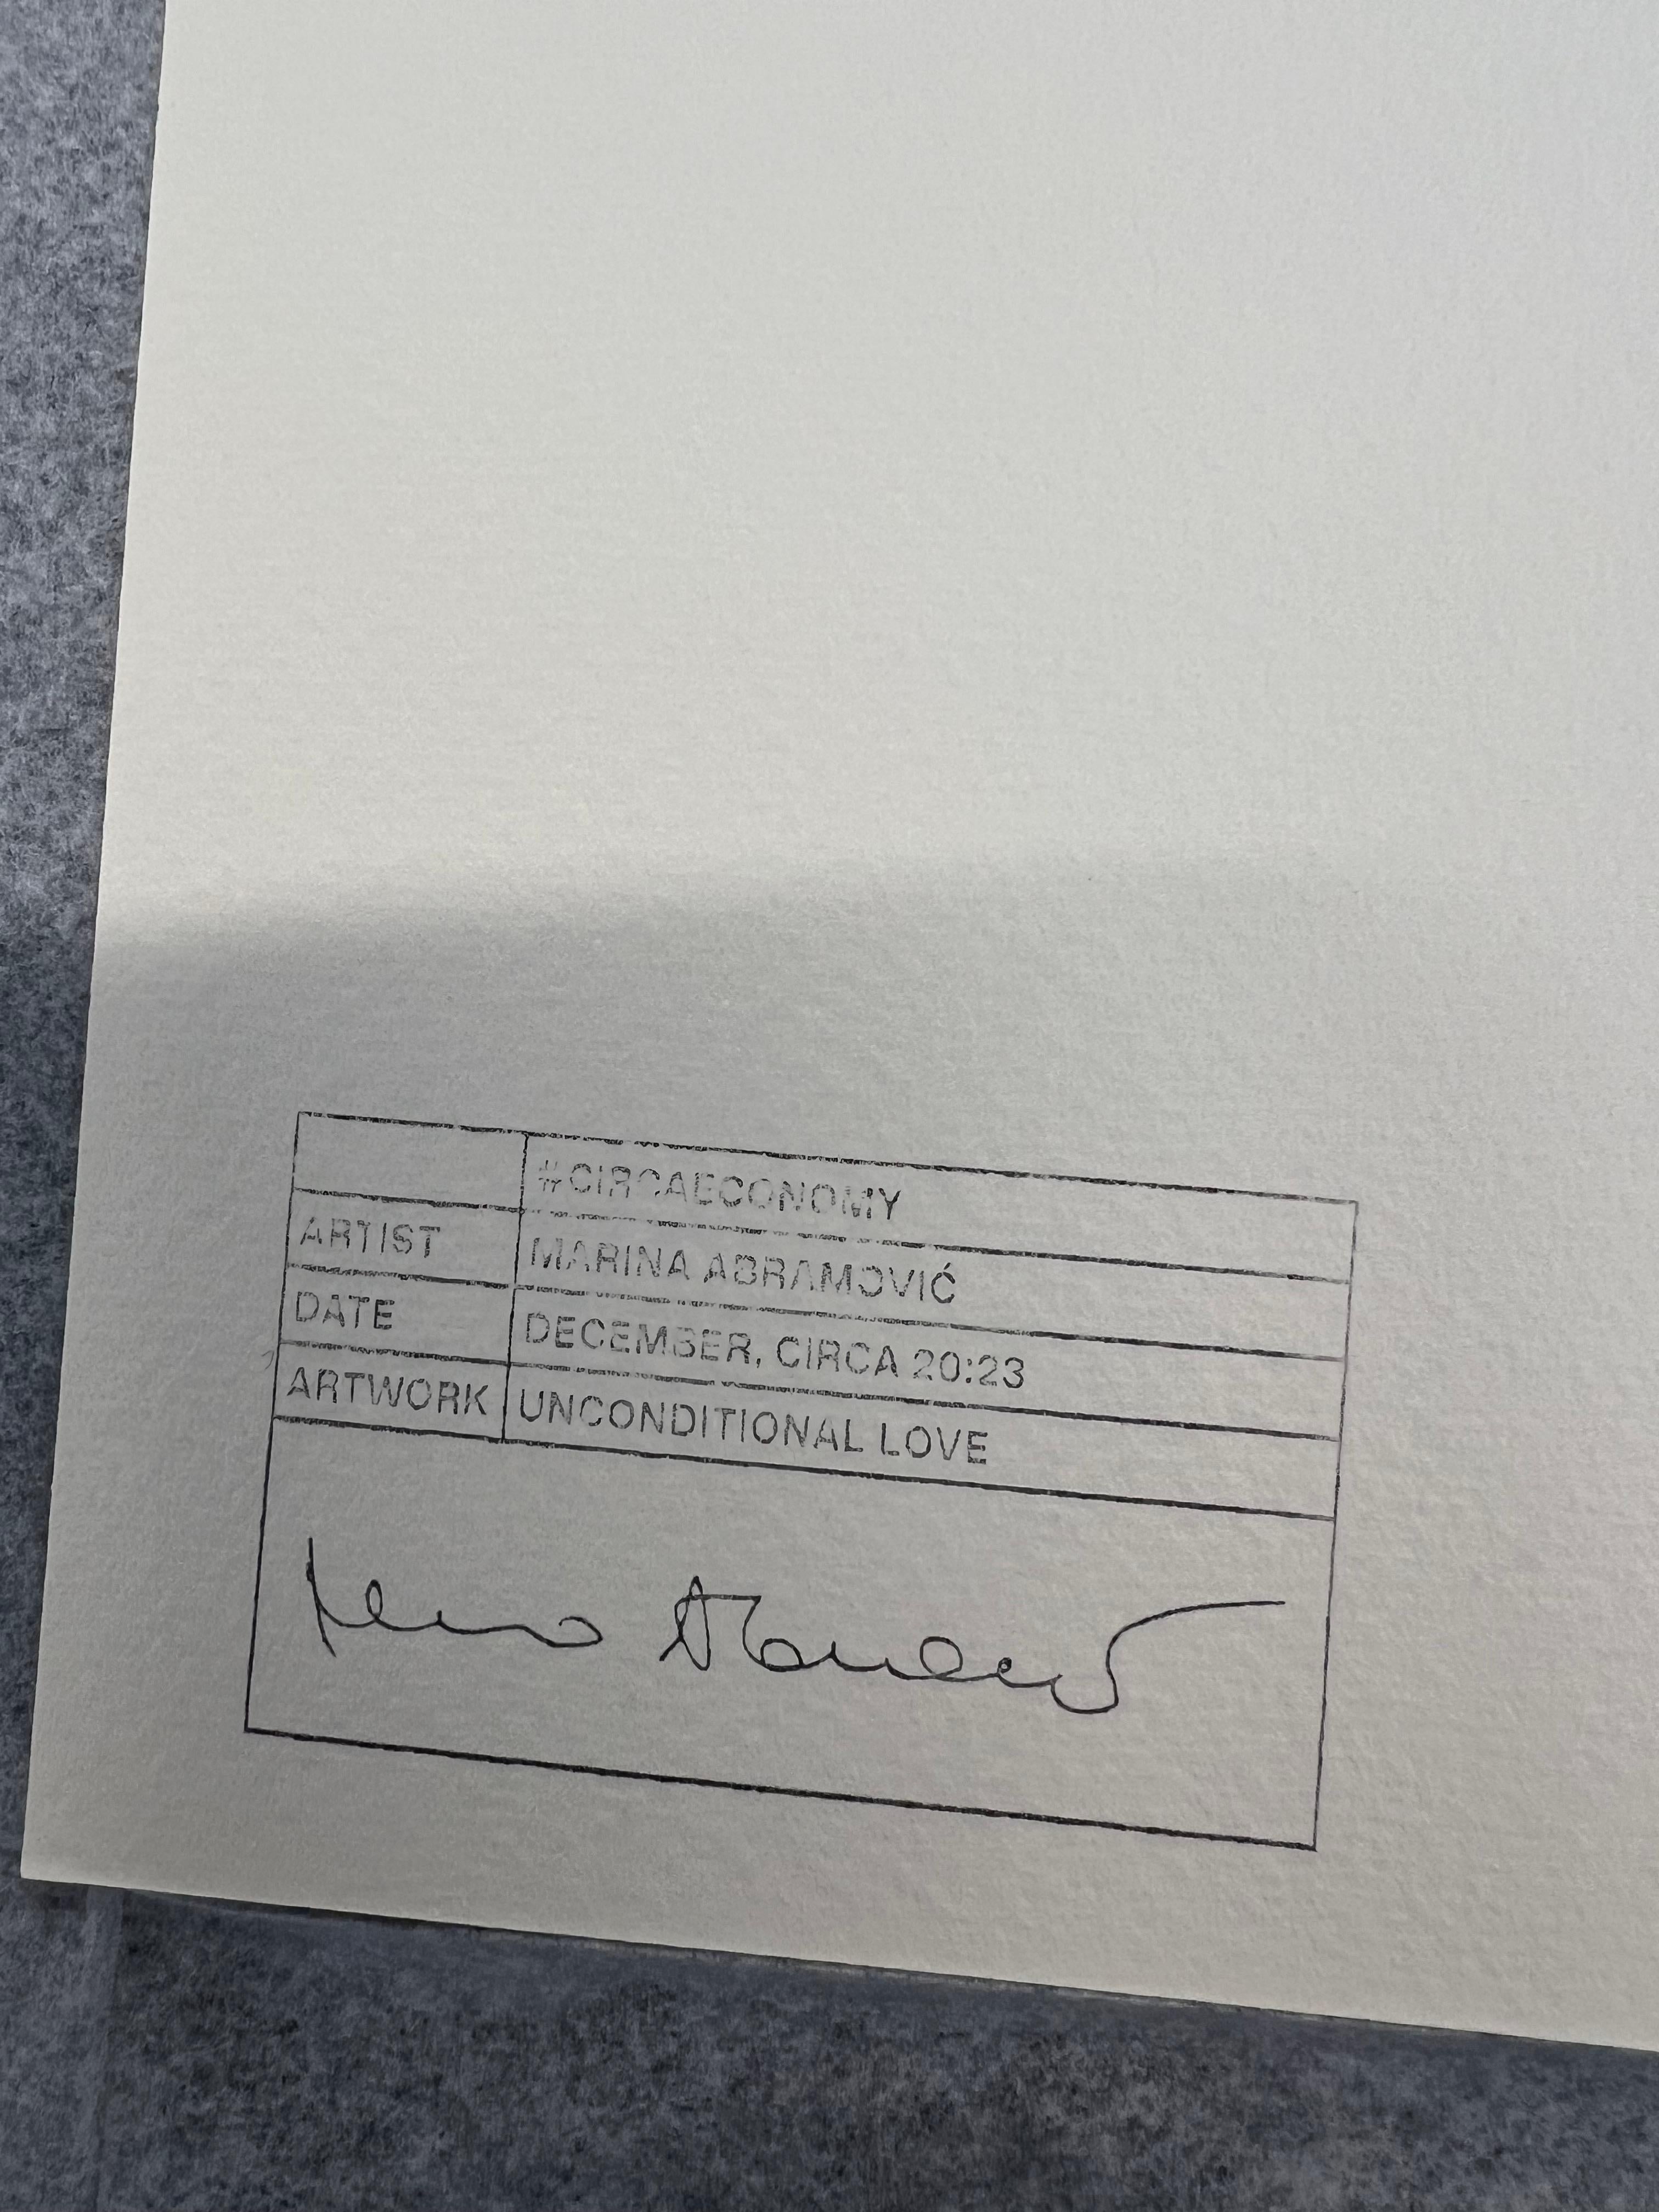 Marina Abramović
Amour inconditionnel, 2024
COA signé à la main
Sérigraphie en deux couleurs
8 1/4 x 10 5/8 in
21 x 27 cm
Publié par CIRCA en 2024.
Produit en édition limitée dans le temps à 4 152 exemplaires.